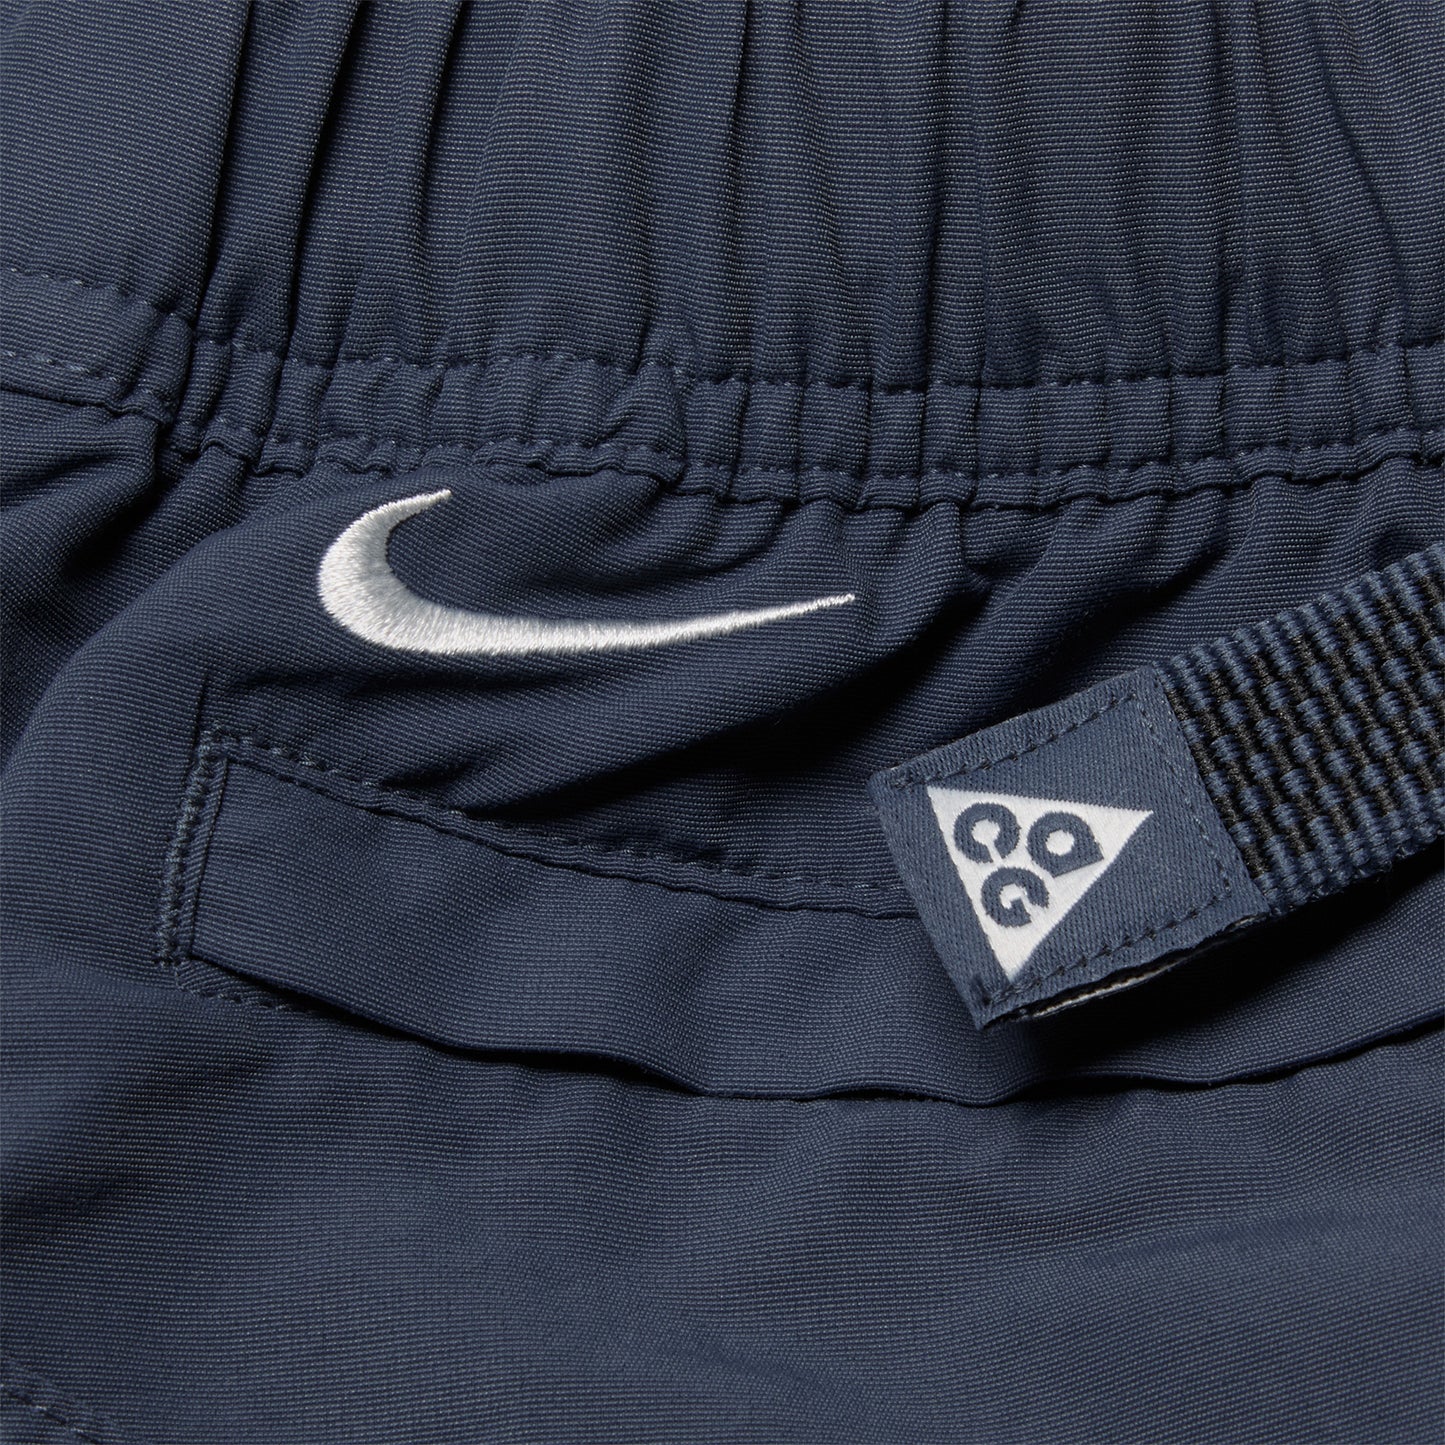 Nike ACG "Snowgrass" Cargo Shorts (Thunder Blue/Summit White)